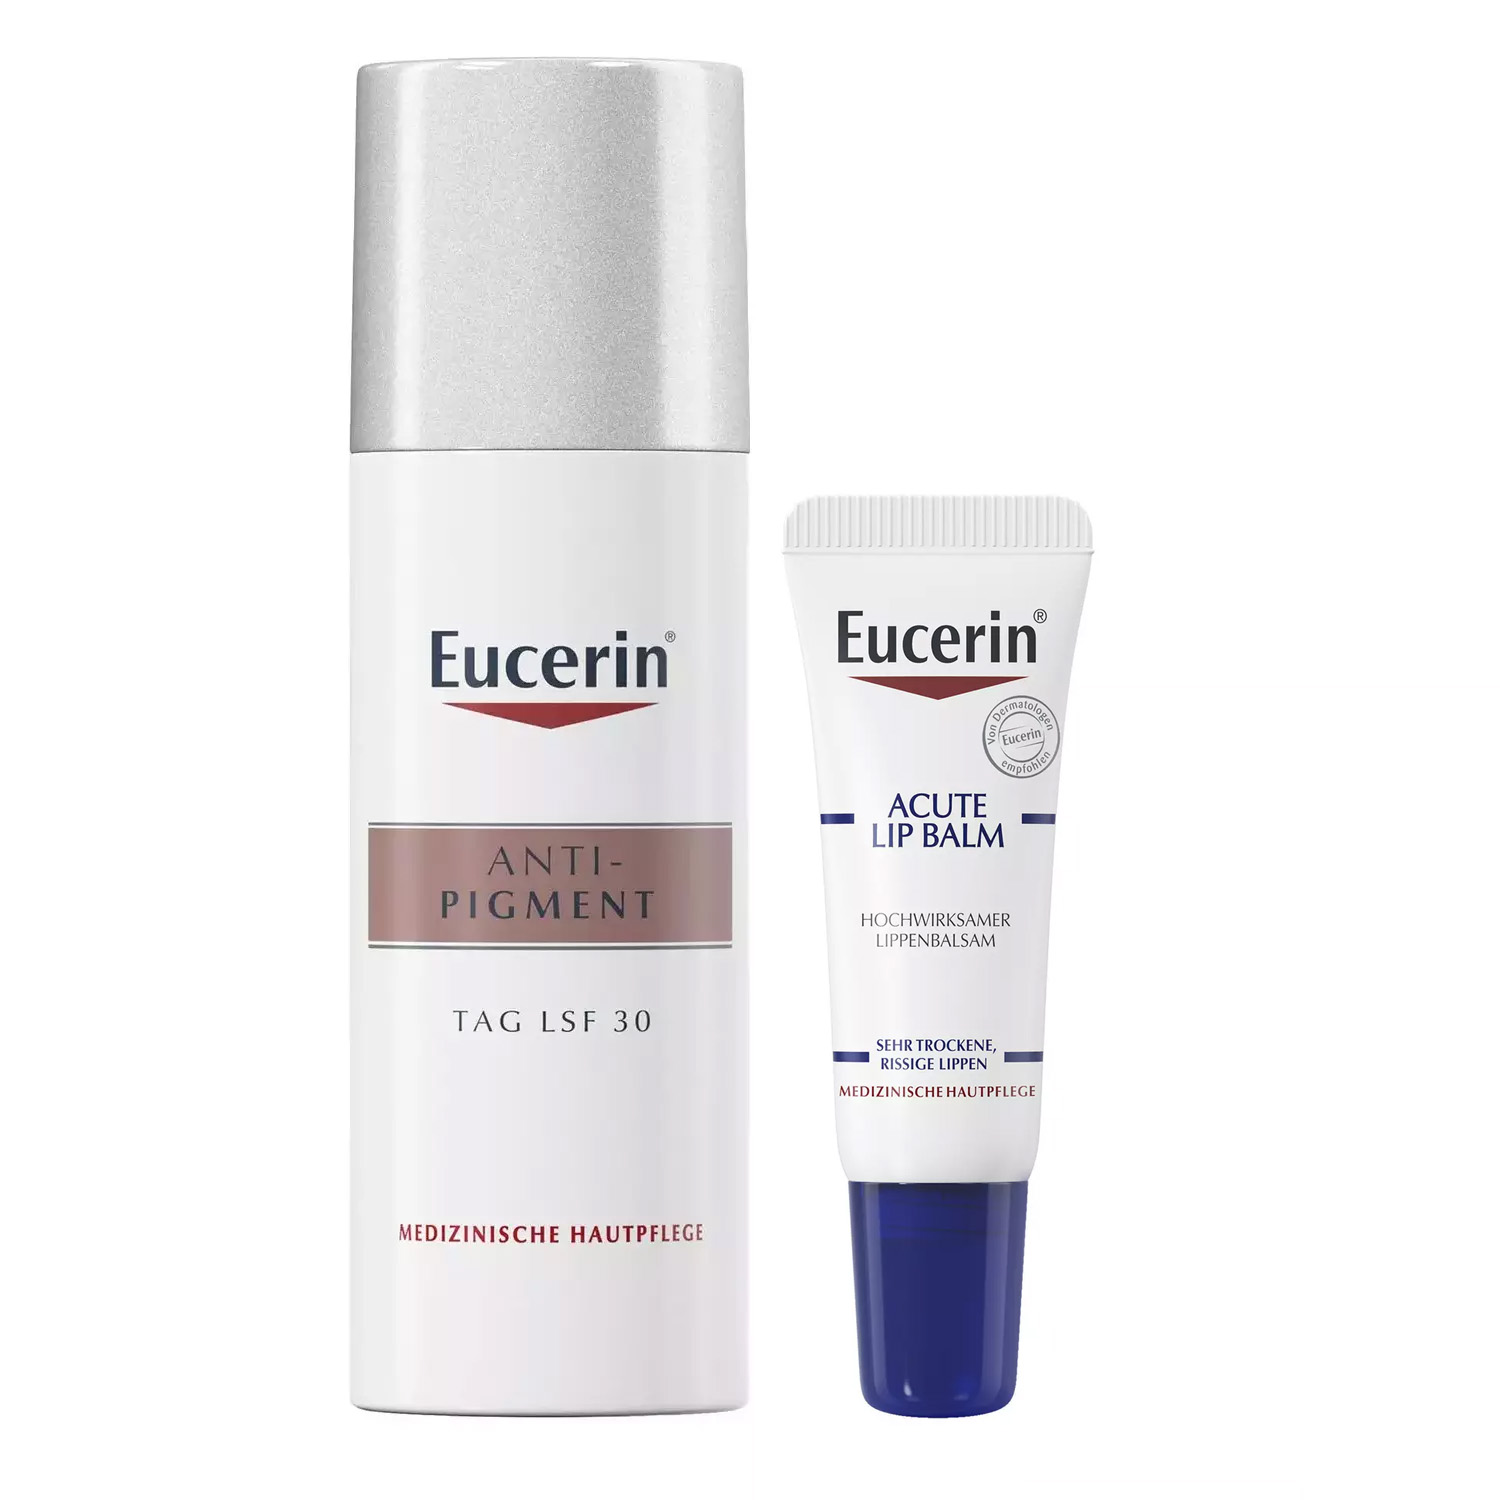 Eucerin Набор для ухода за кожей: бальзам для губ, 10 мл + крем дневной SPF30+, 50 мл (Eucerin, Anti-Pigment) хранитель 30 мл бальзам